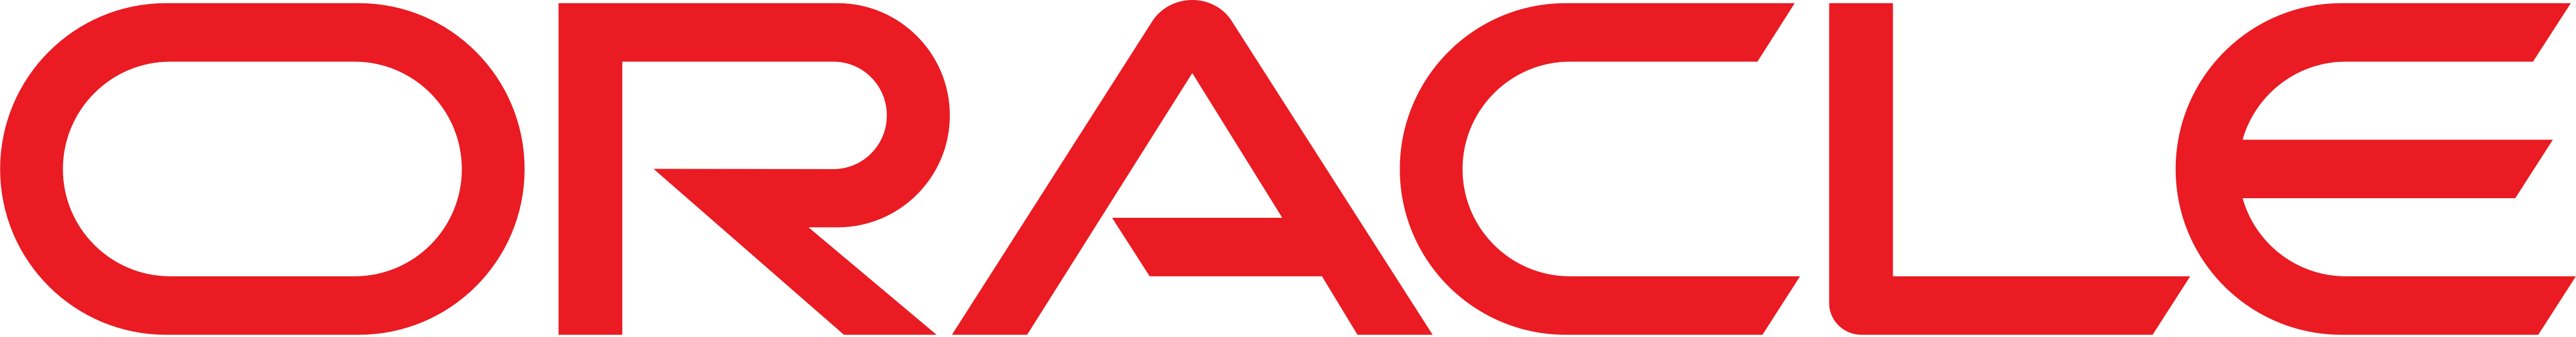 Oracle Logo Icon - Free Downl